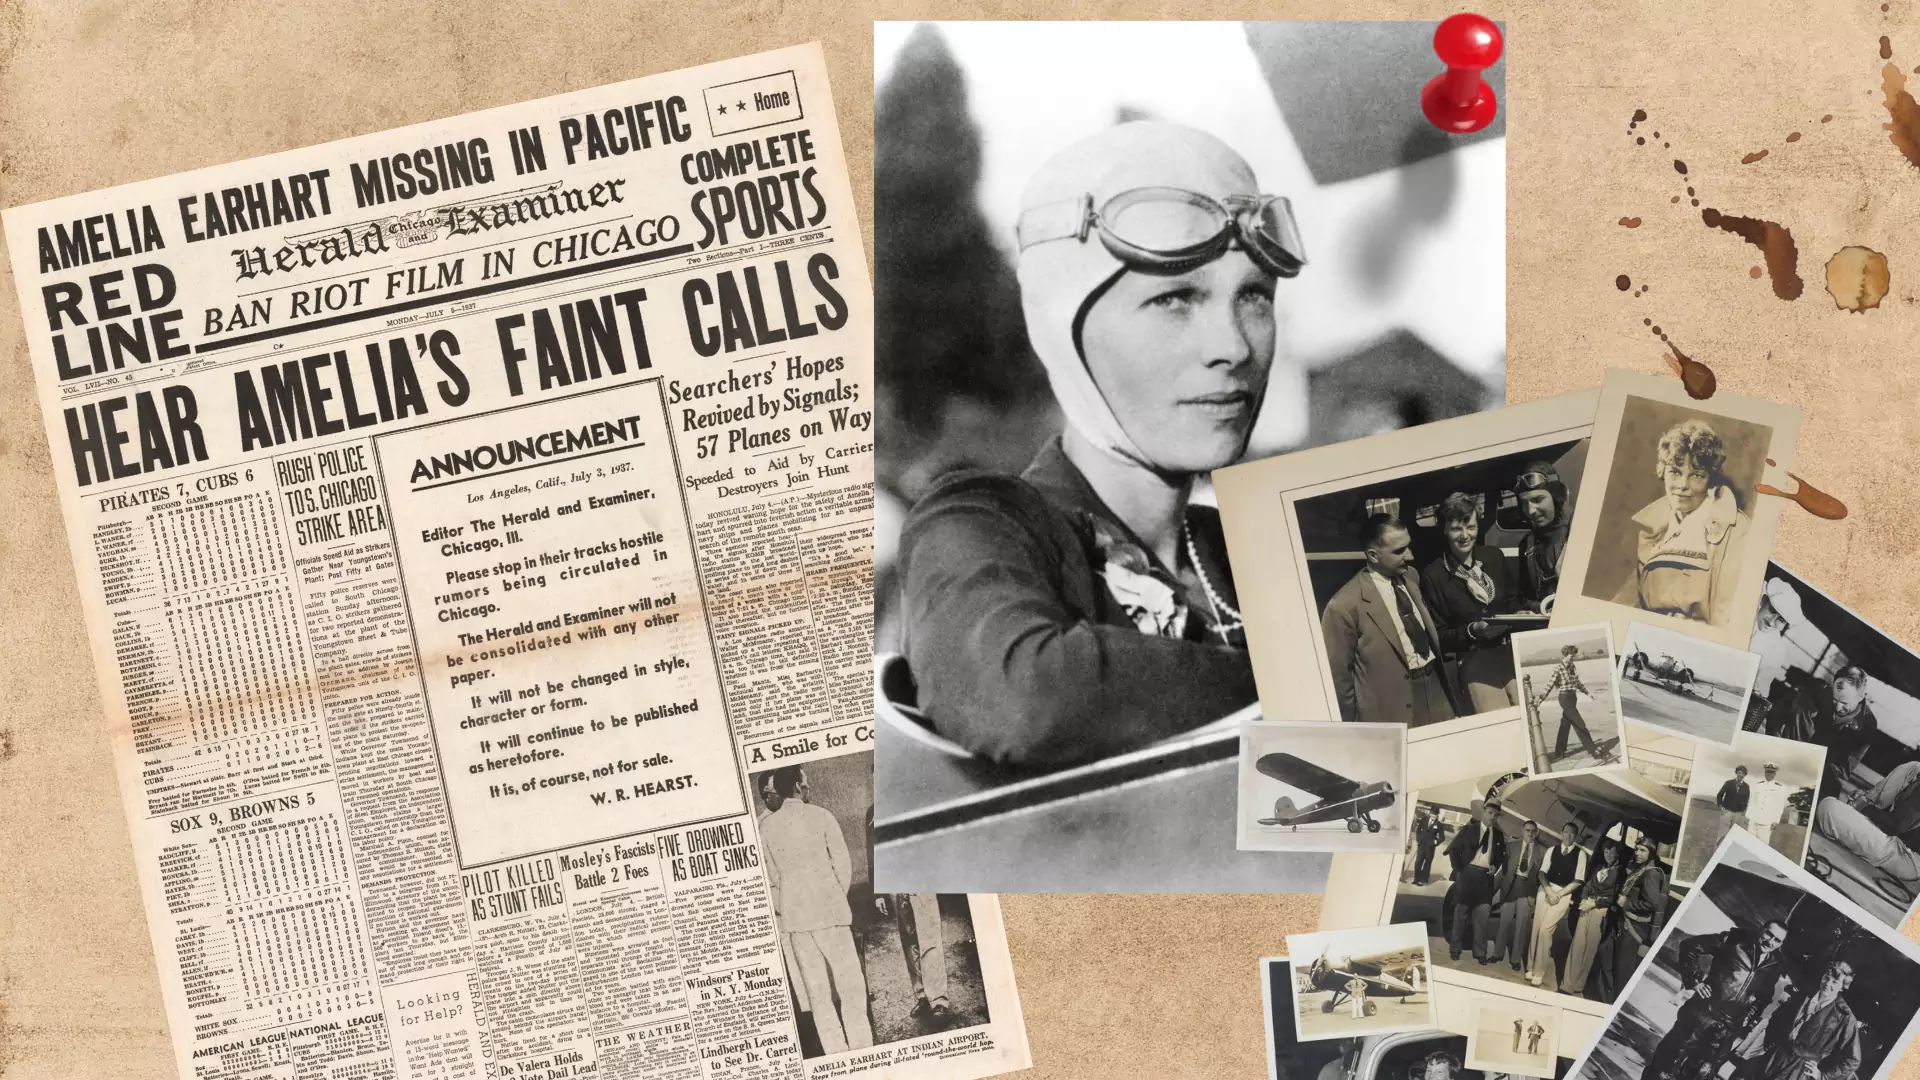 Odnaleziono samolot Amelii Earhart? Słynna pilotka zaginęła w 1937 r.